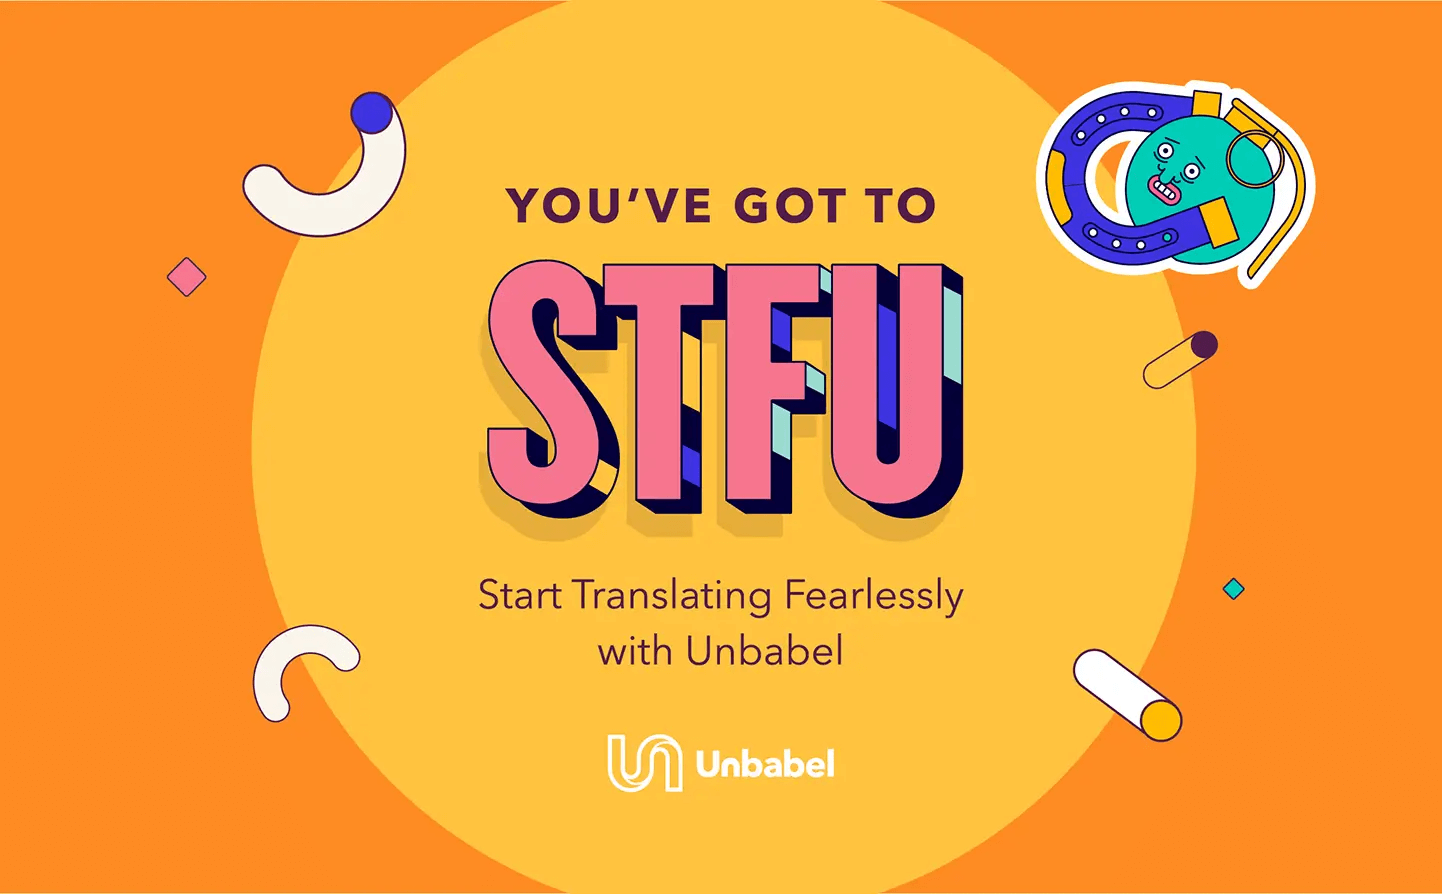 Unbabel STFU campaign